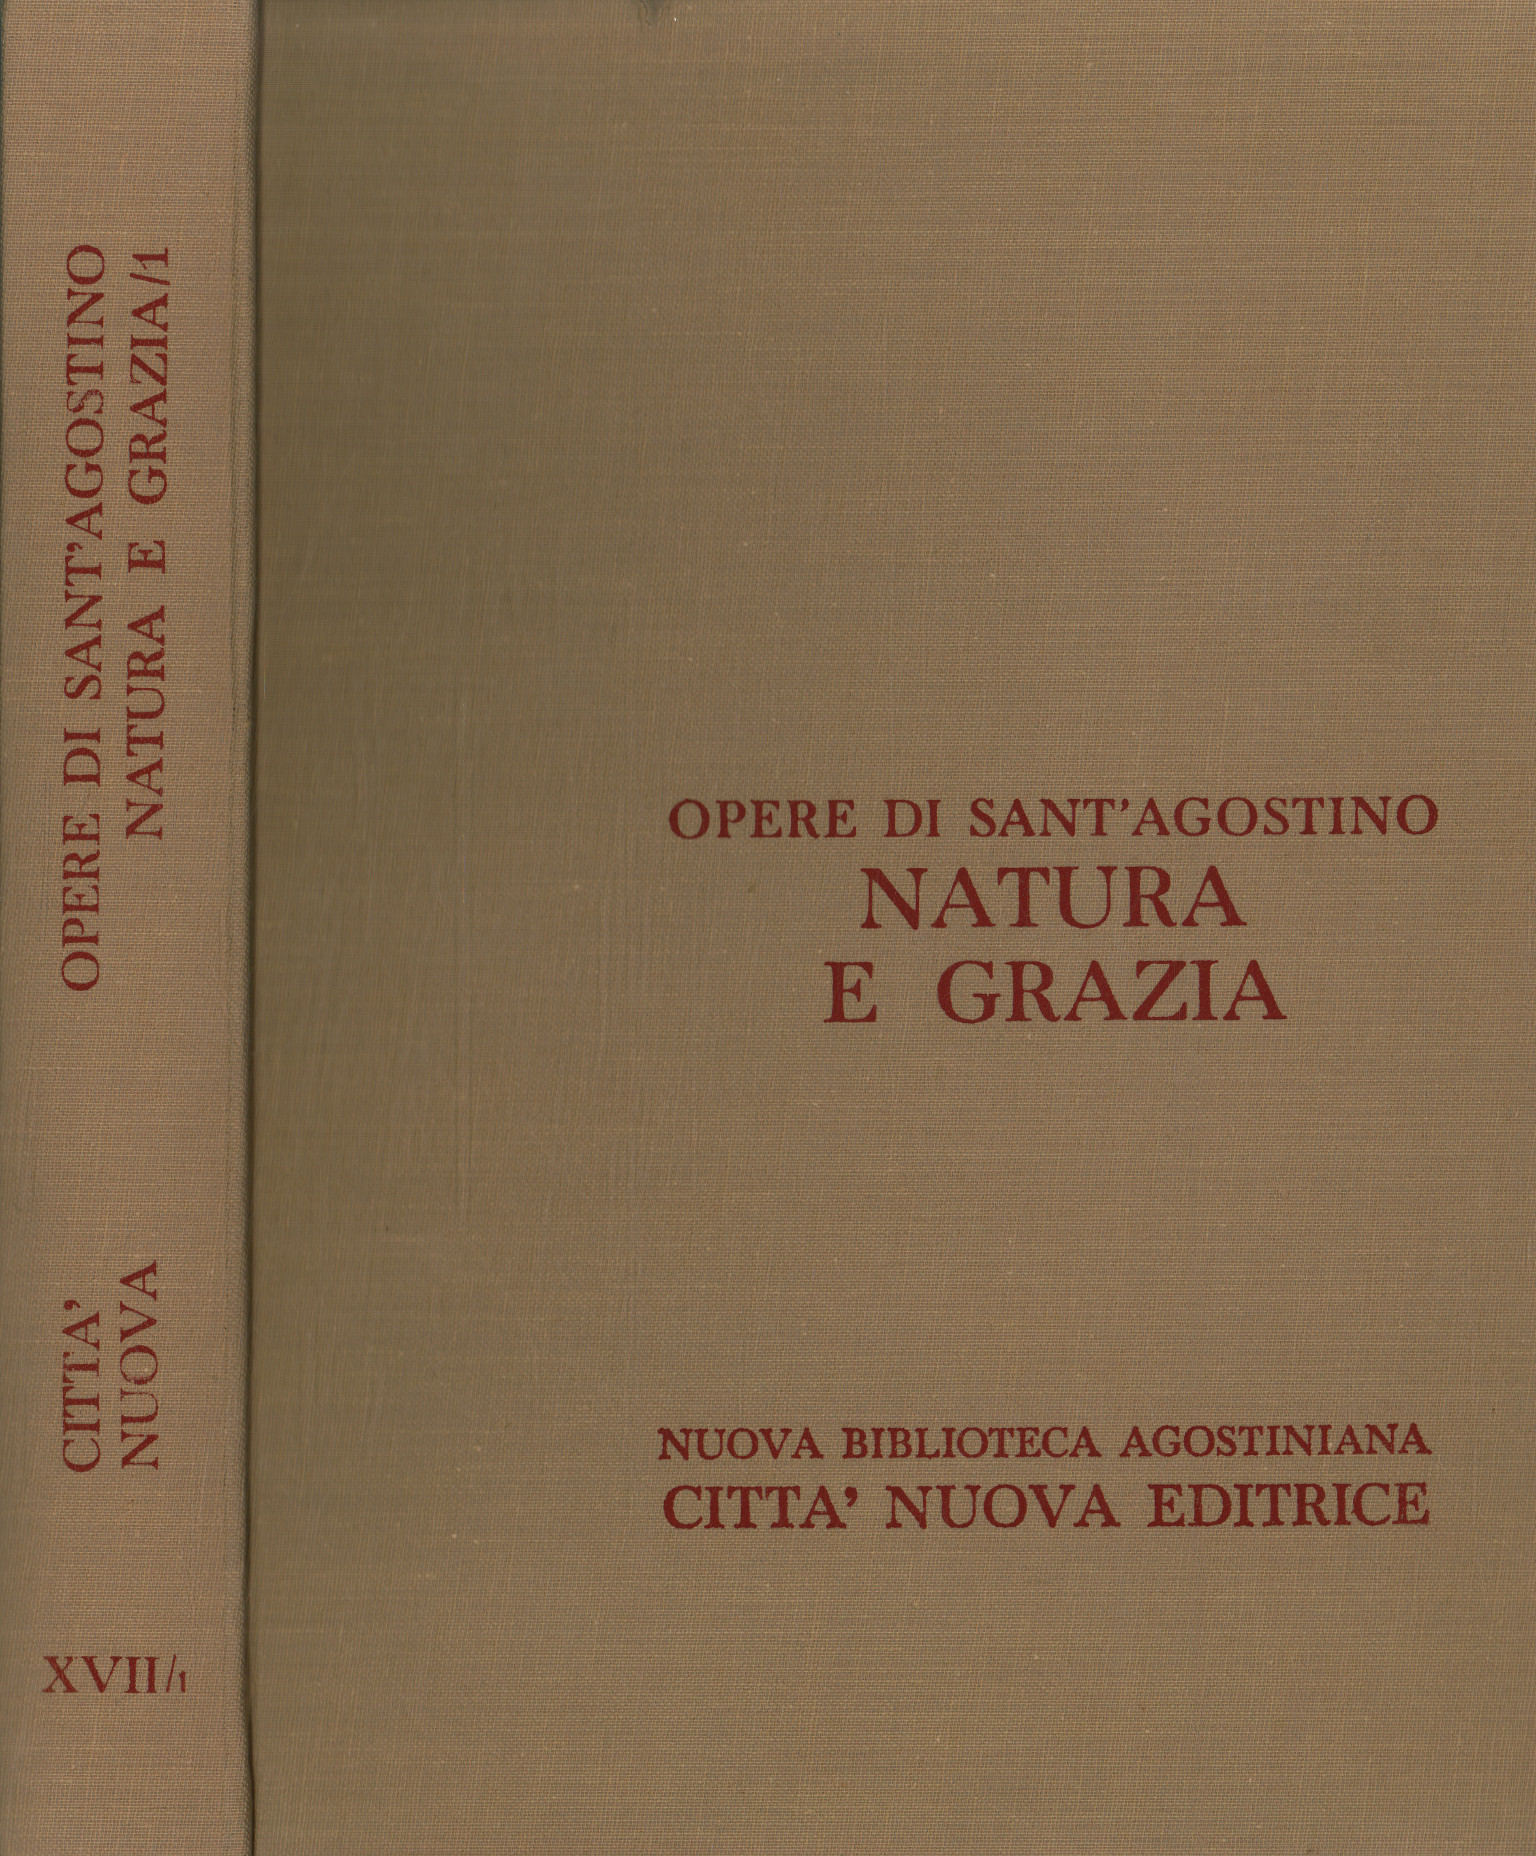 Werke von Sant'Agostino. Natur